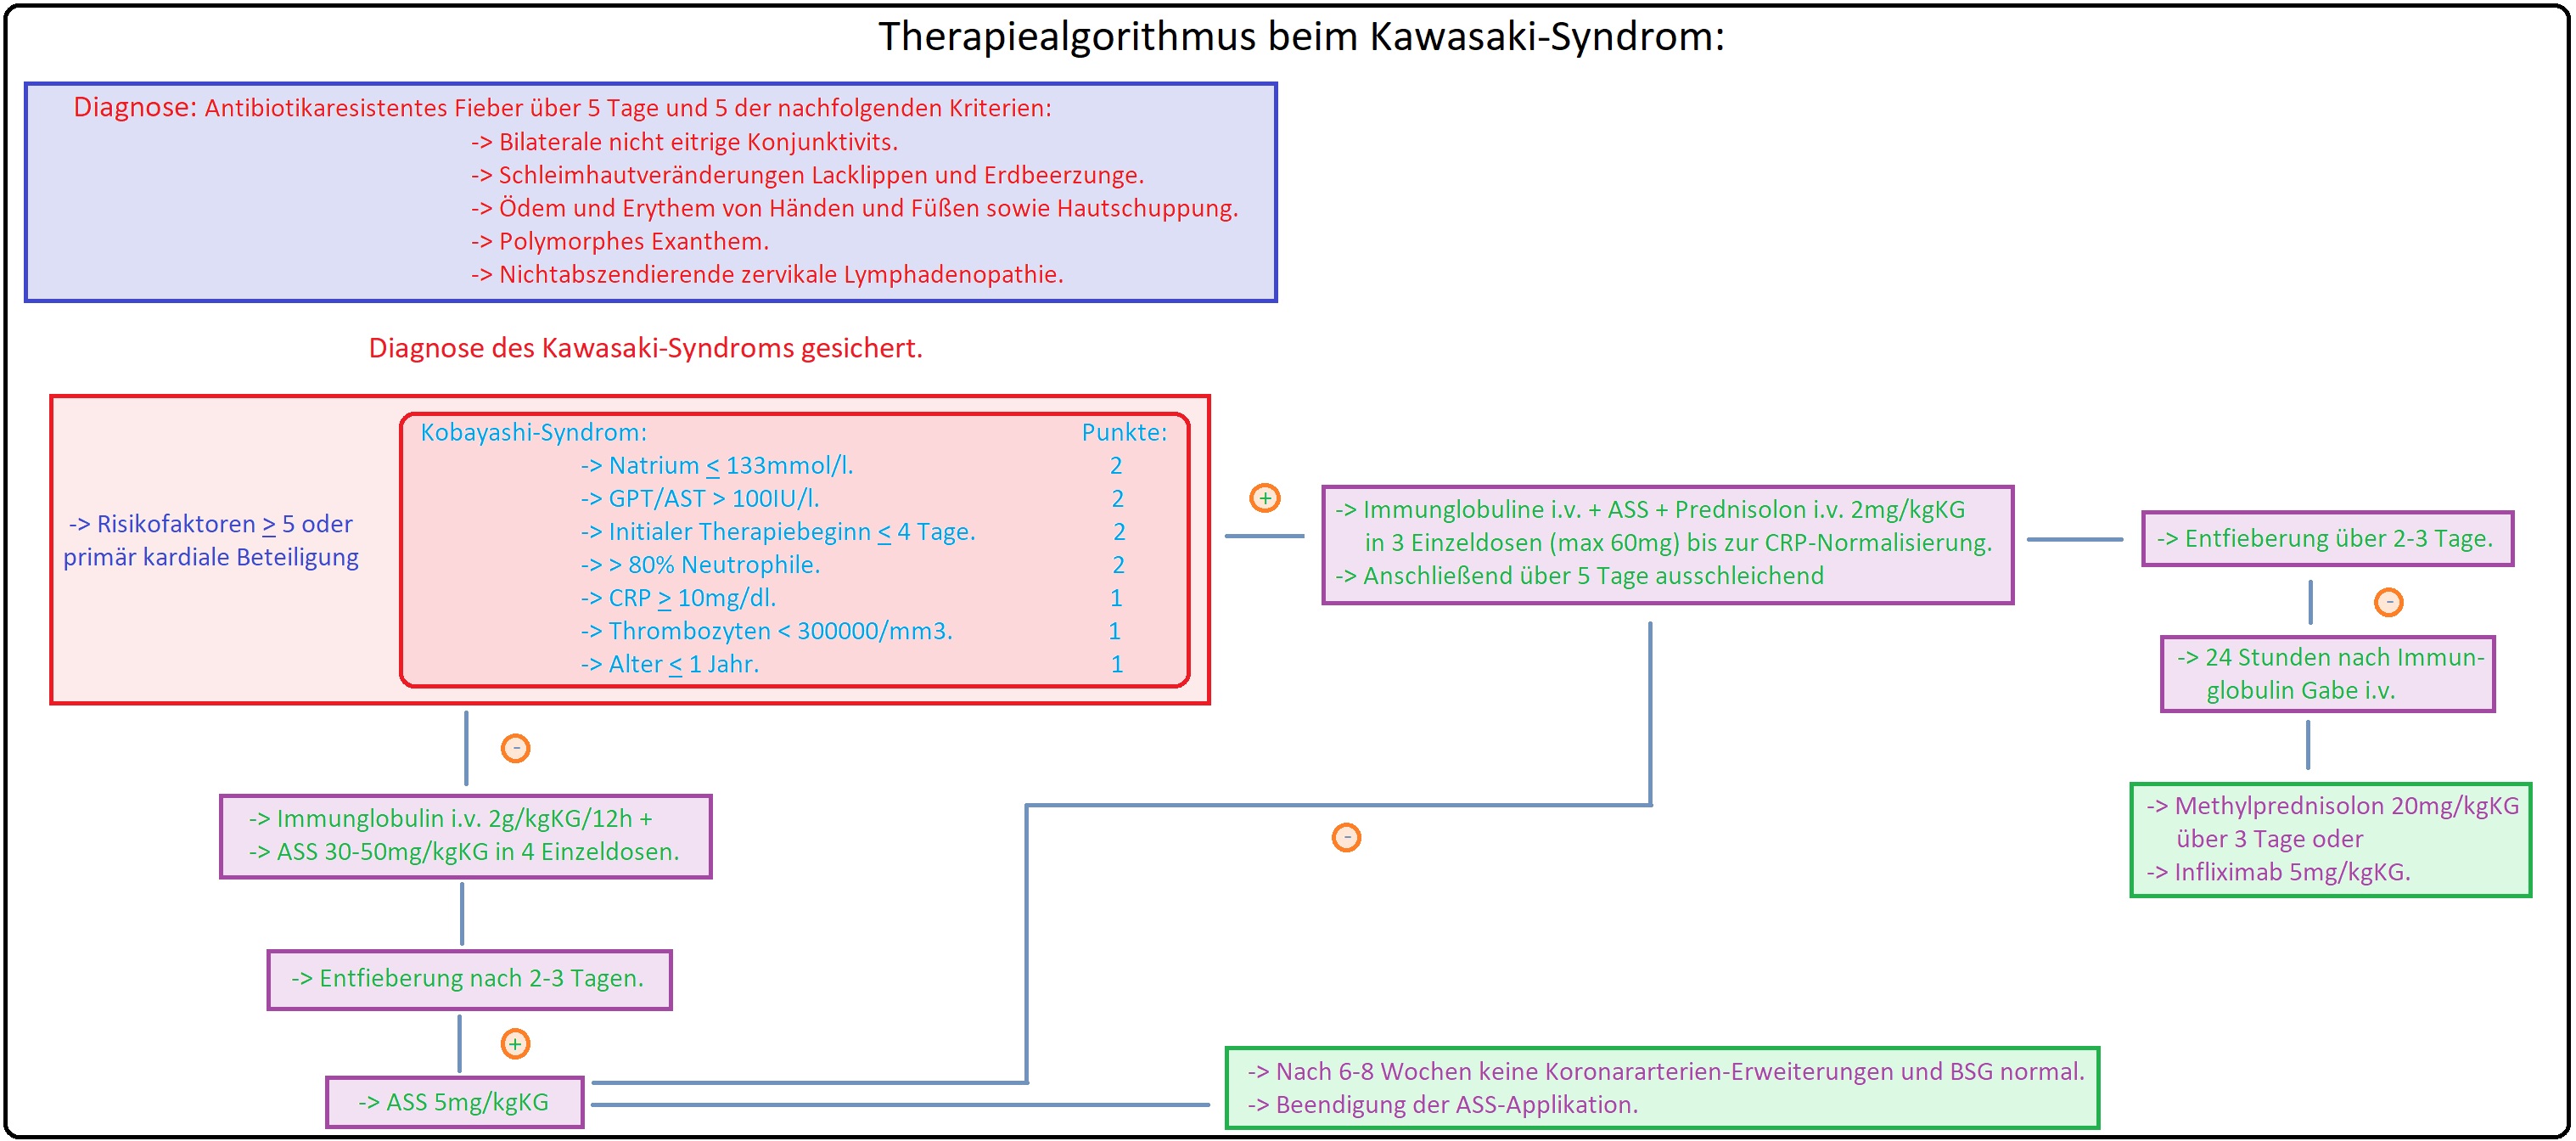 003 Therapiealgorithmus beim Kawasaki Syndrom